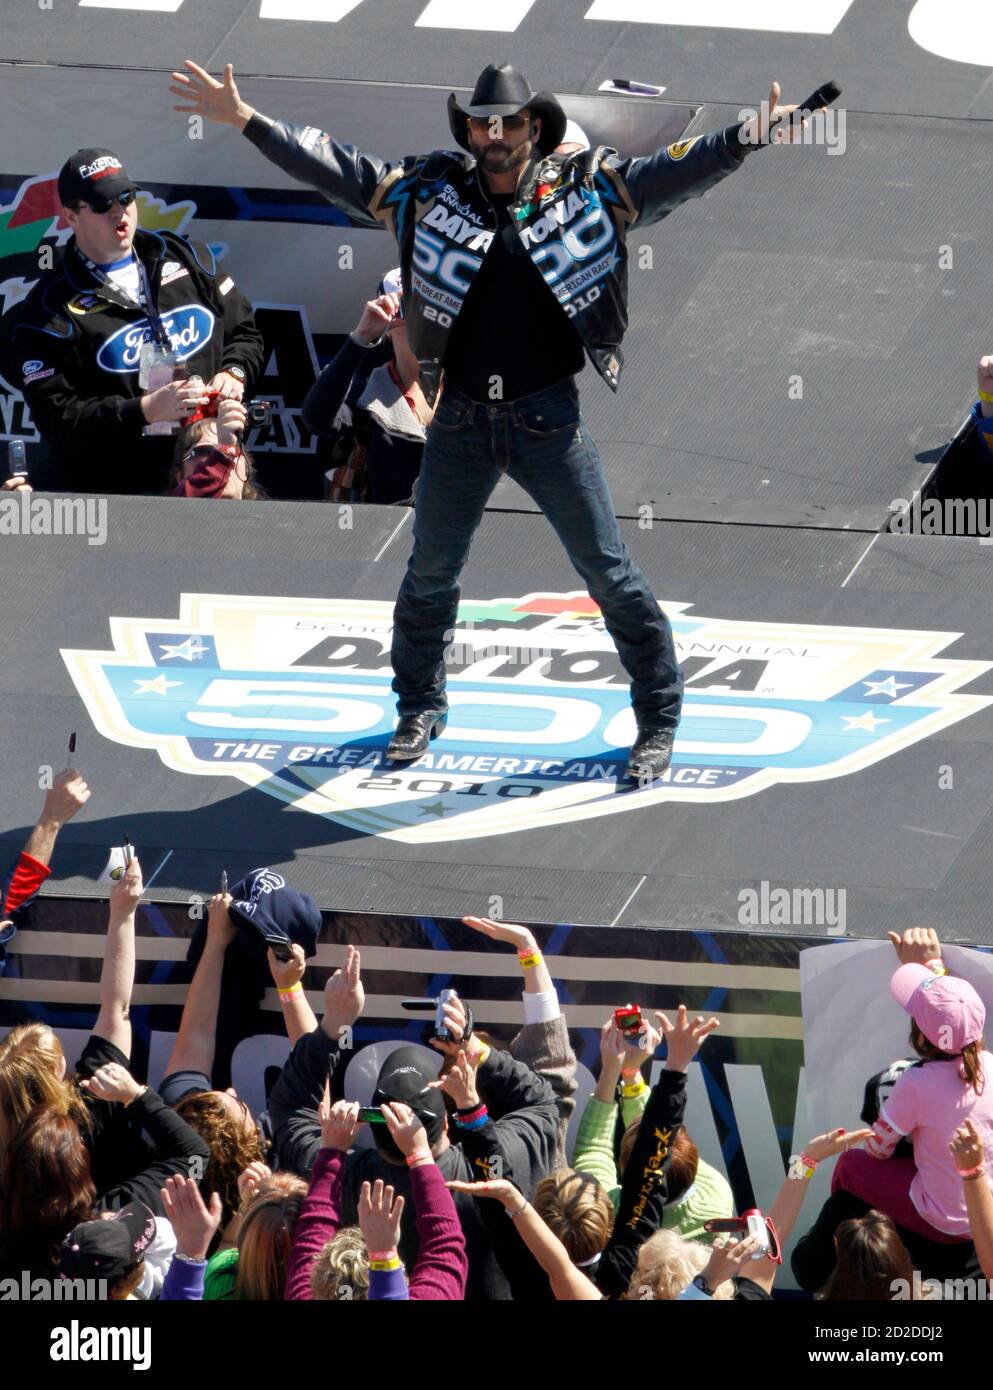 Il cantante di musica country Tim McGraw suona prima dell'inizio della gara NASCAR Sprint Cup Series Daytona 500 al Daytona International Speedway di Daytona Beach, Florida, 14 febbraio 2010. REUTERS/Pierre Ducharme (STATI UNITI - Tag: SPORT MOTOR RACING ENTERTAINMENT) Foto Stock